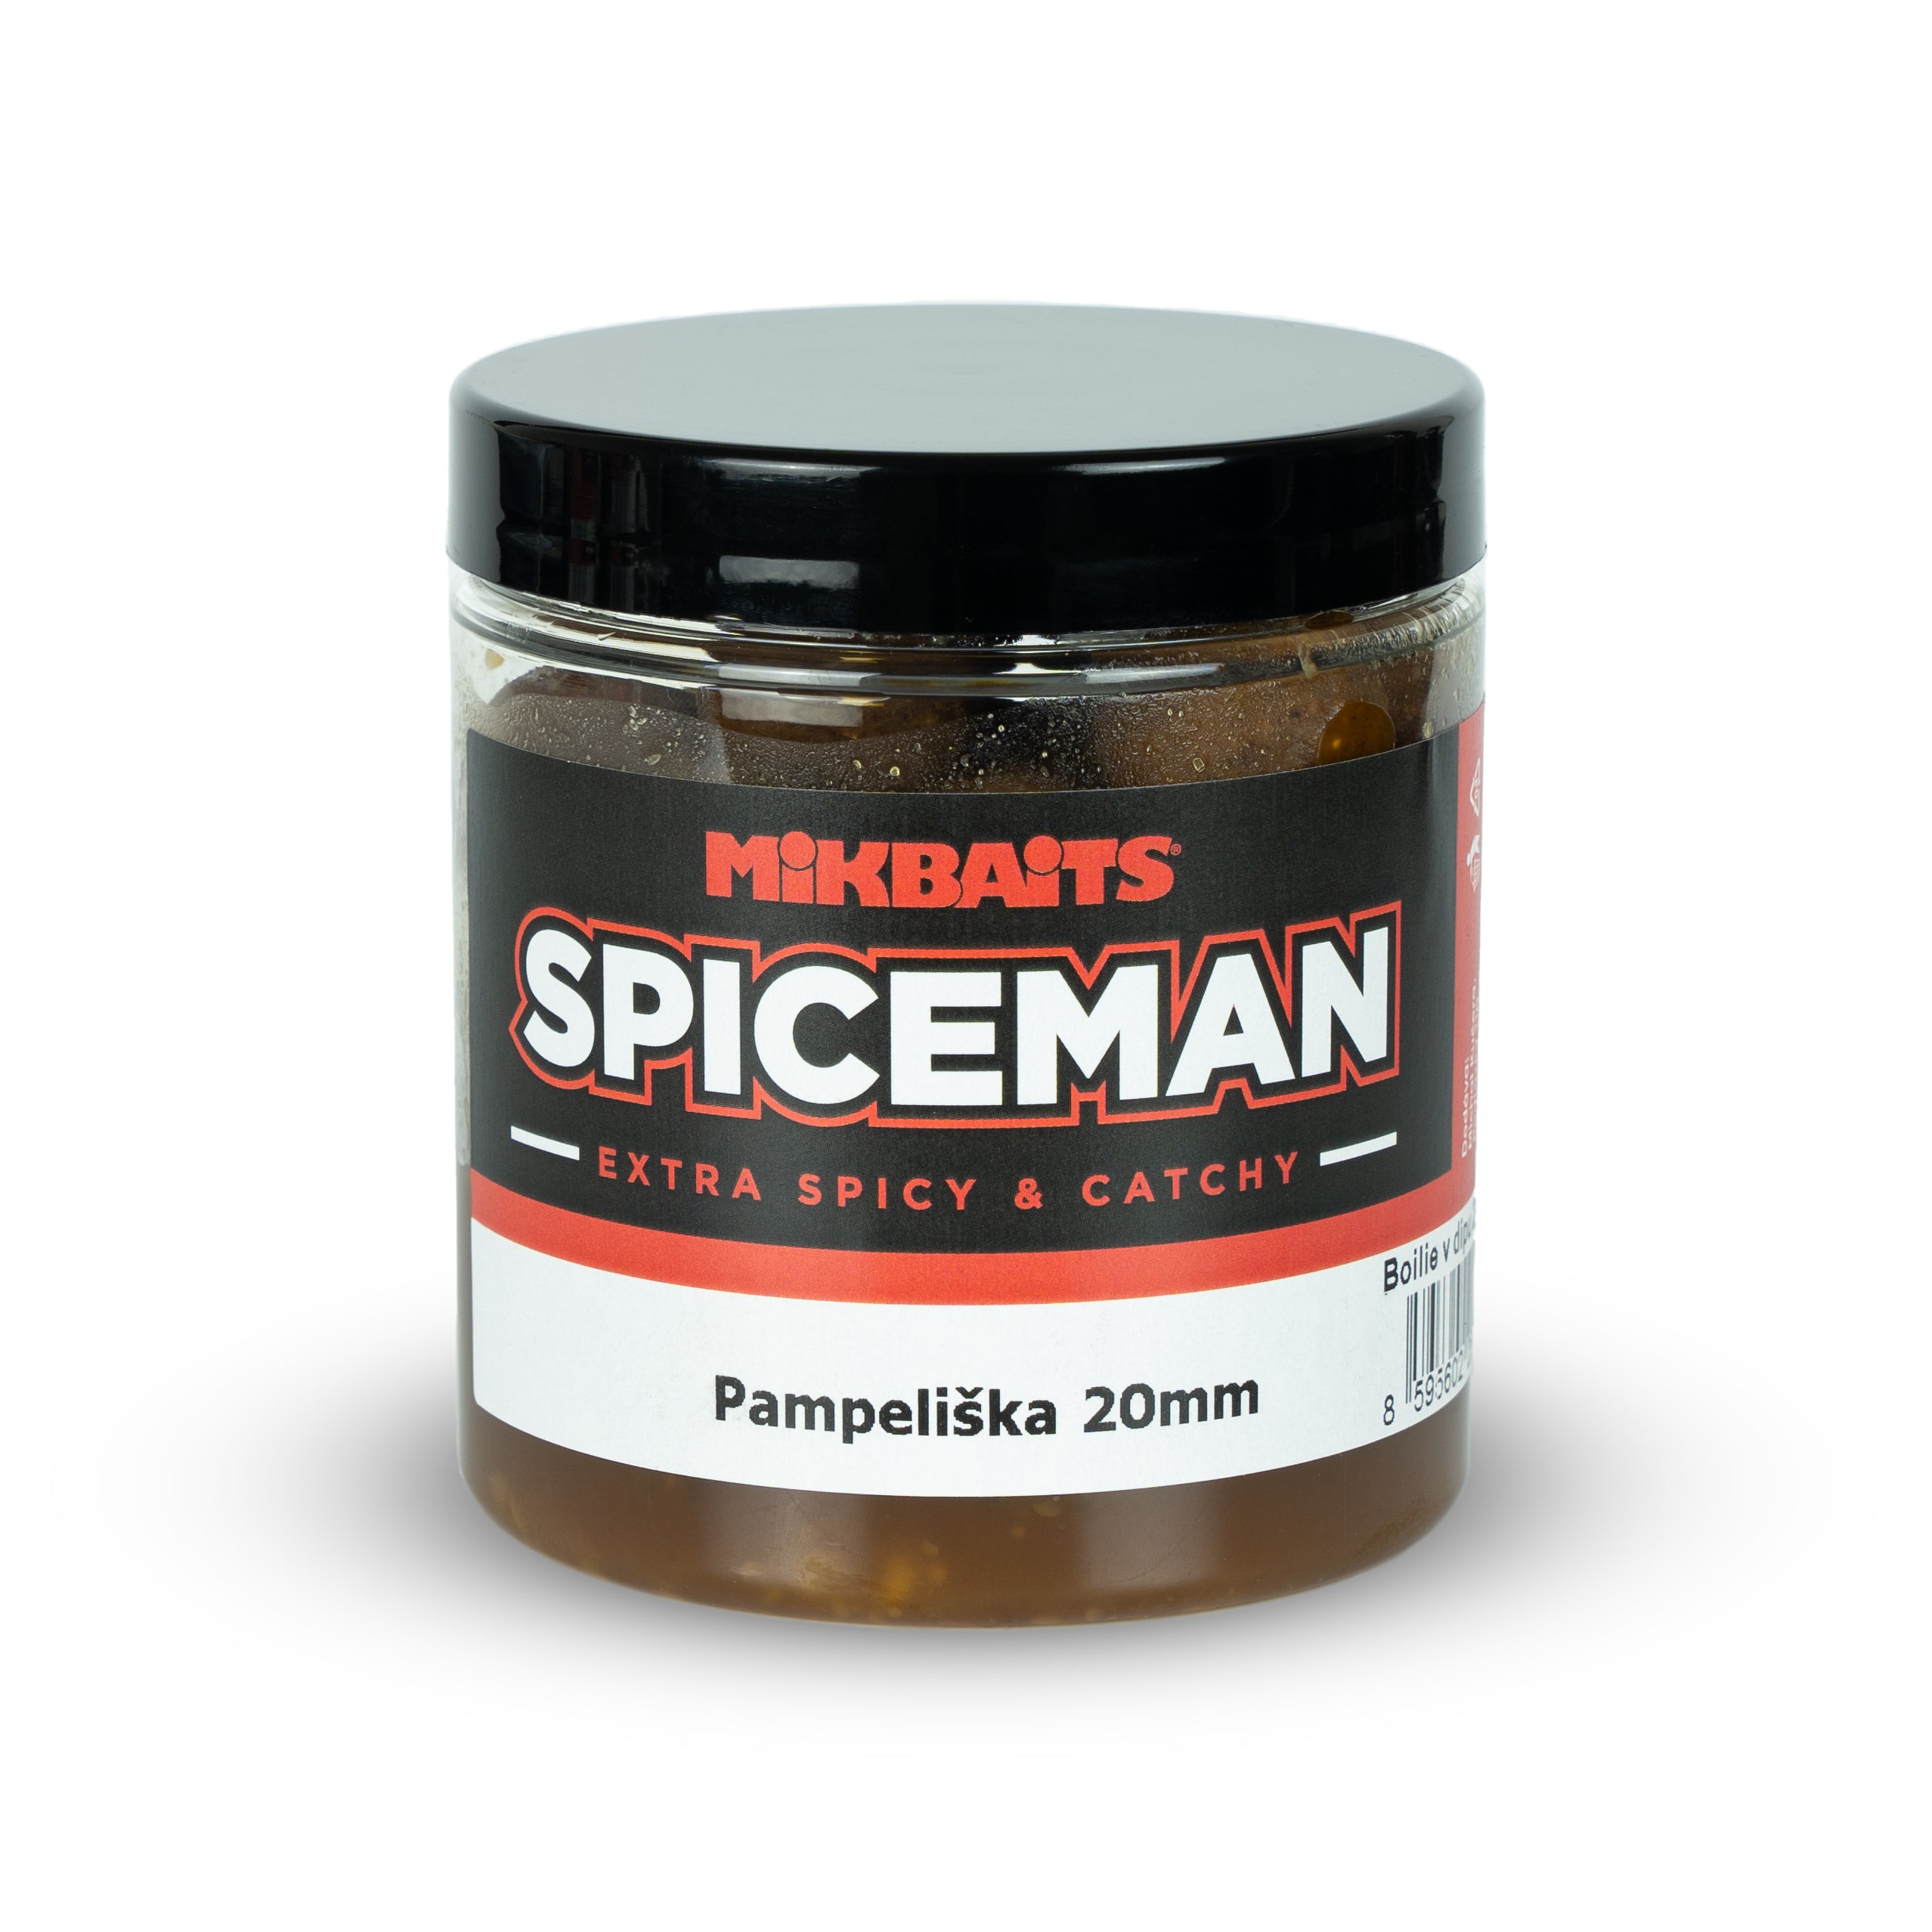 Mikbaits Spiceman boilie v dipu 250ml Pampeliška